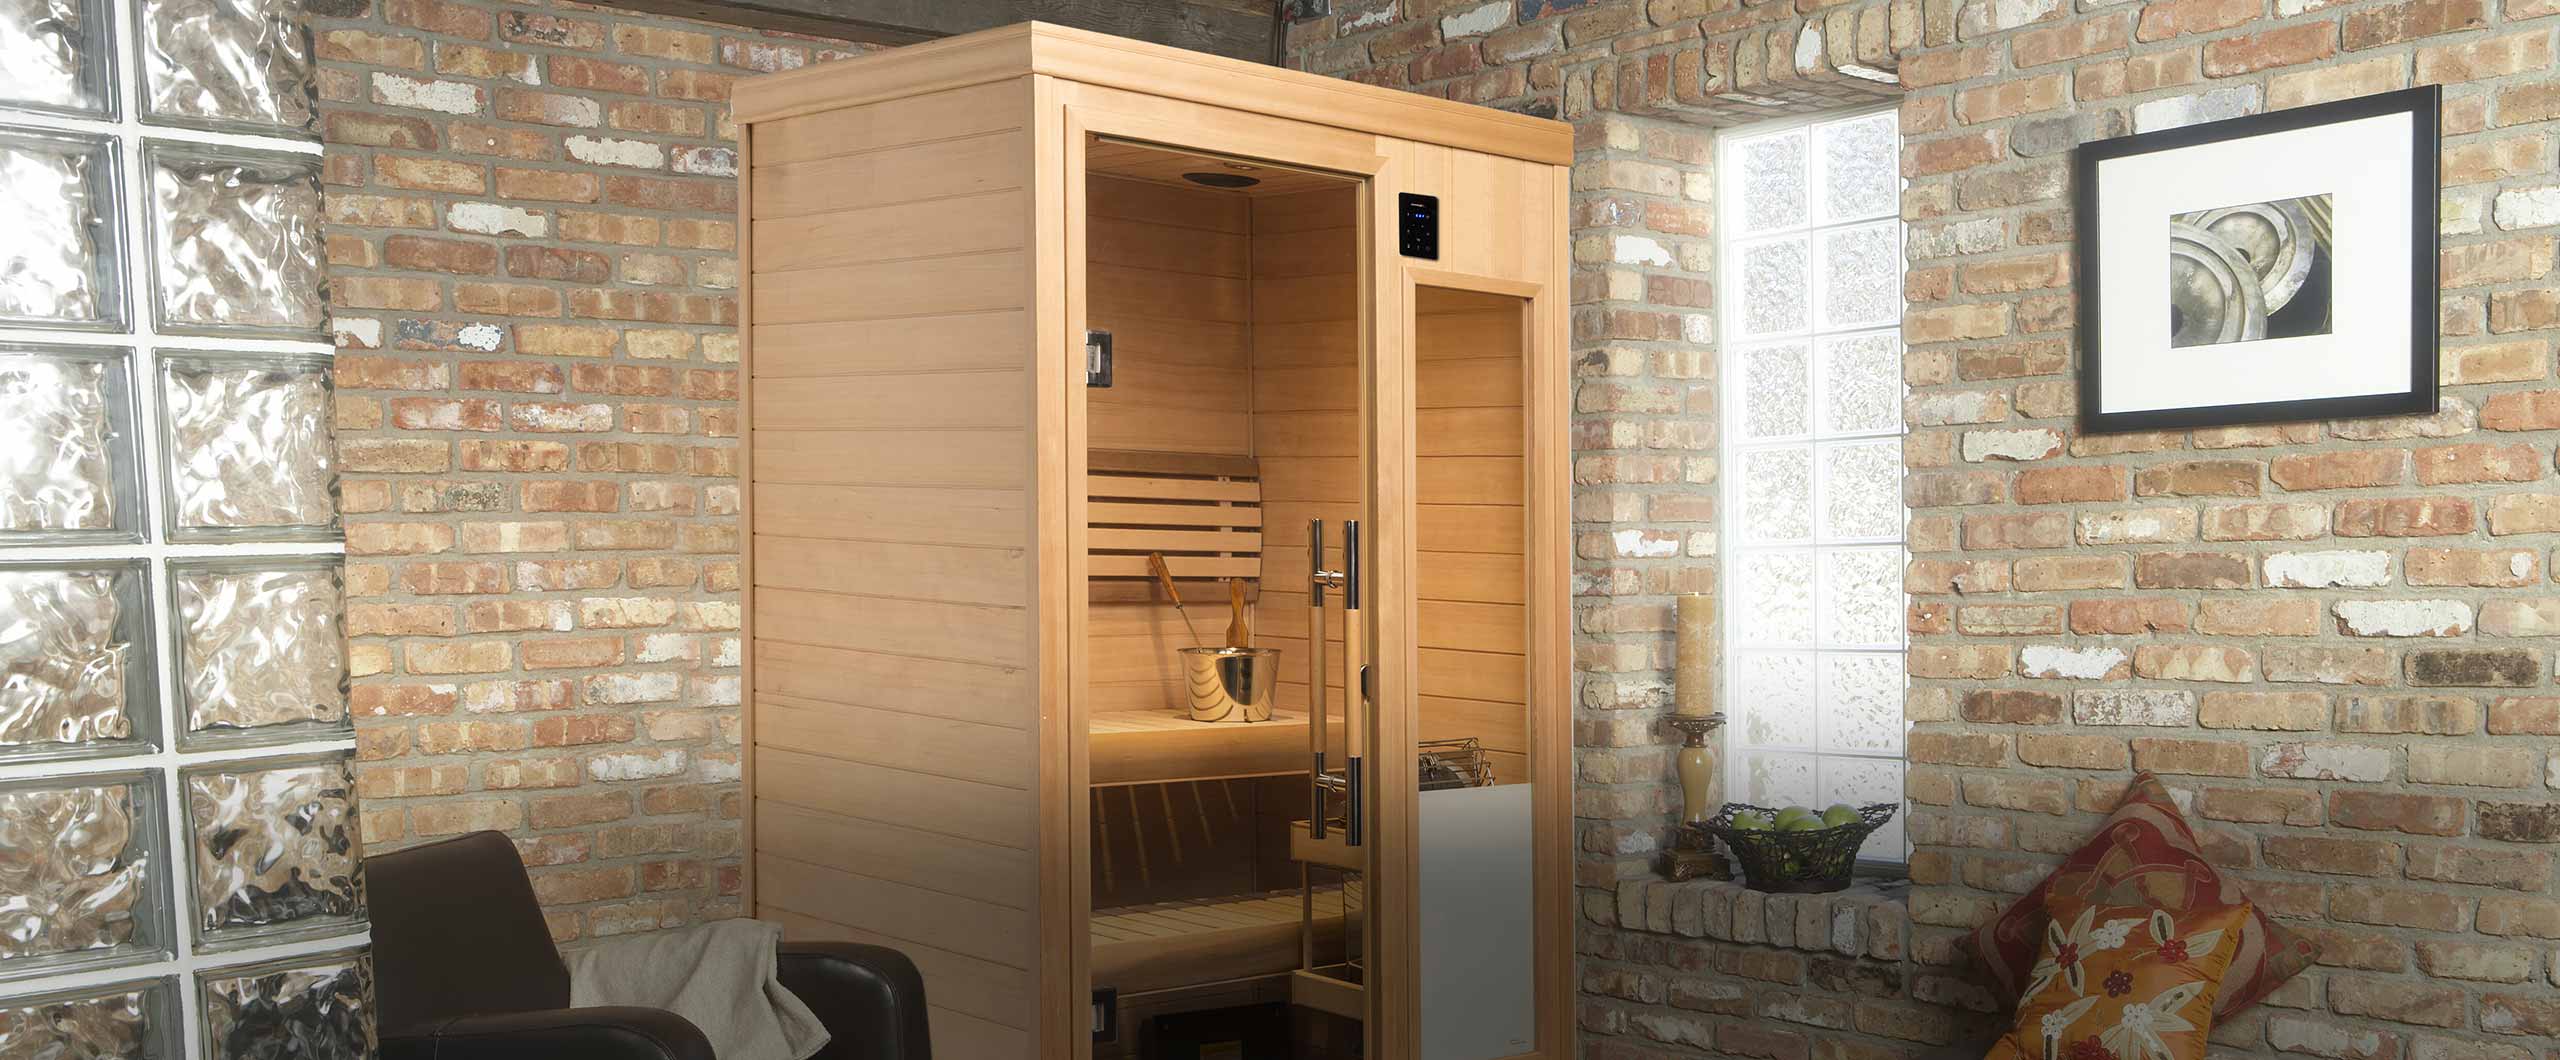 Hallmark sauna